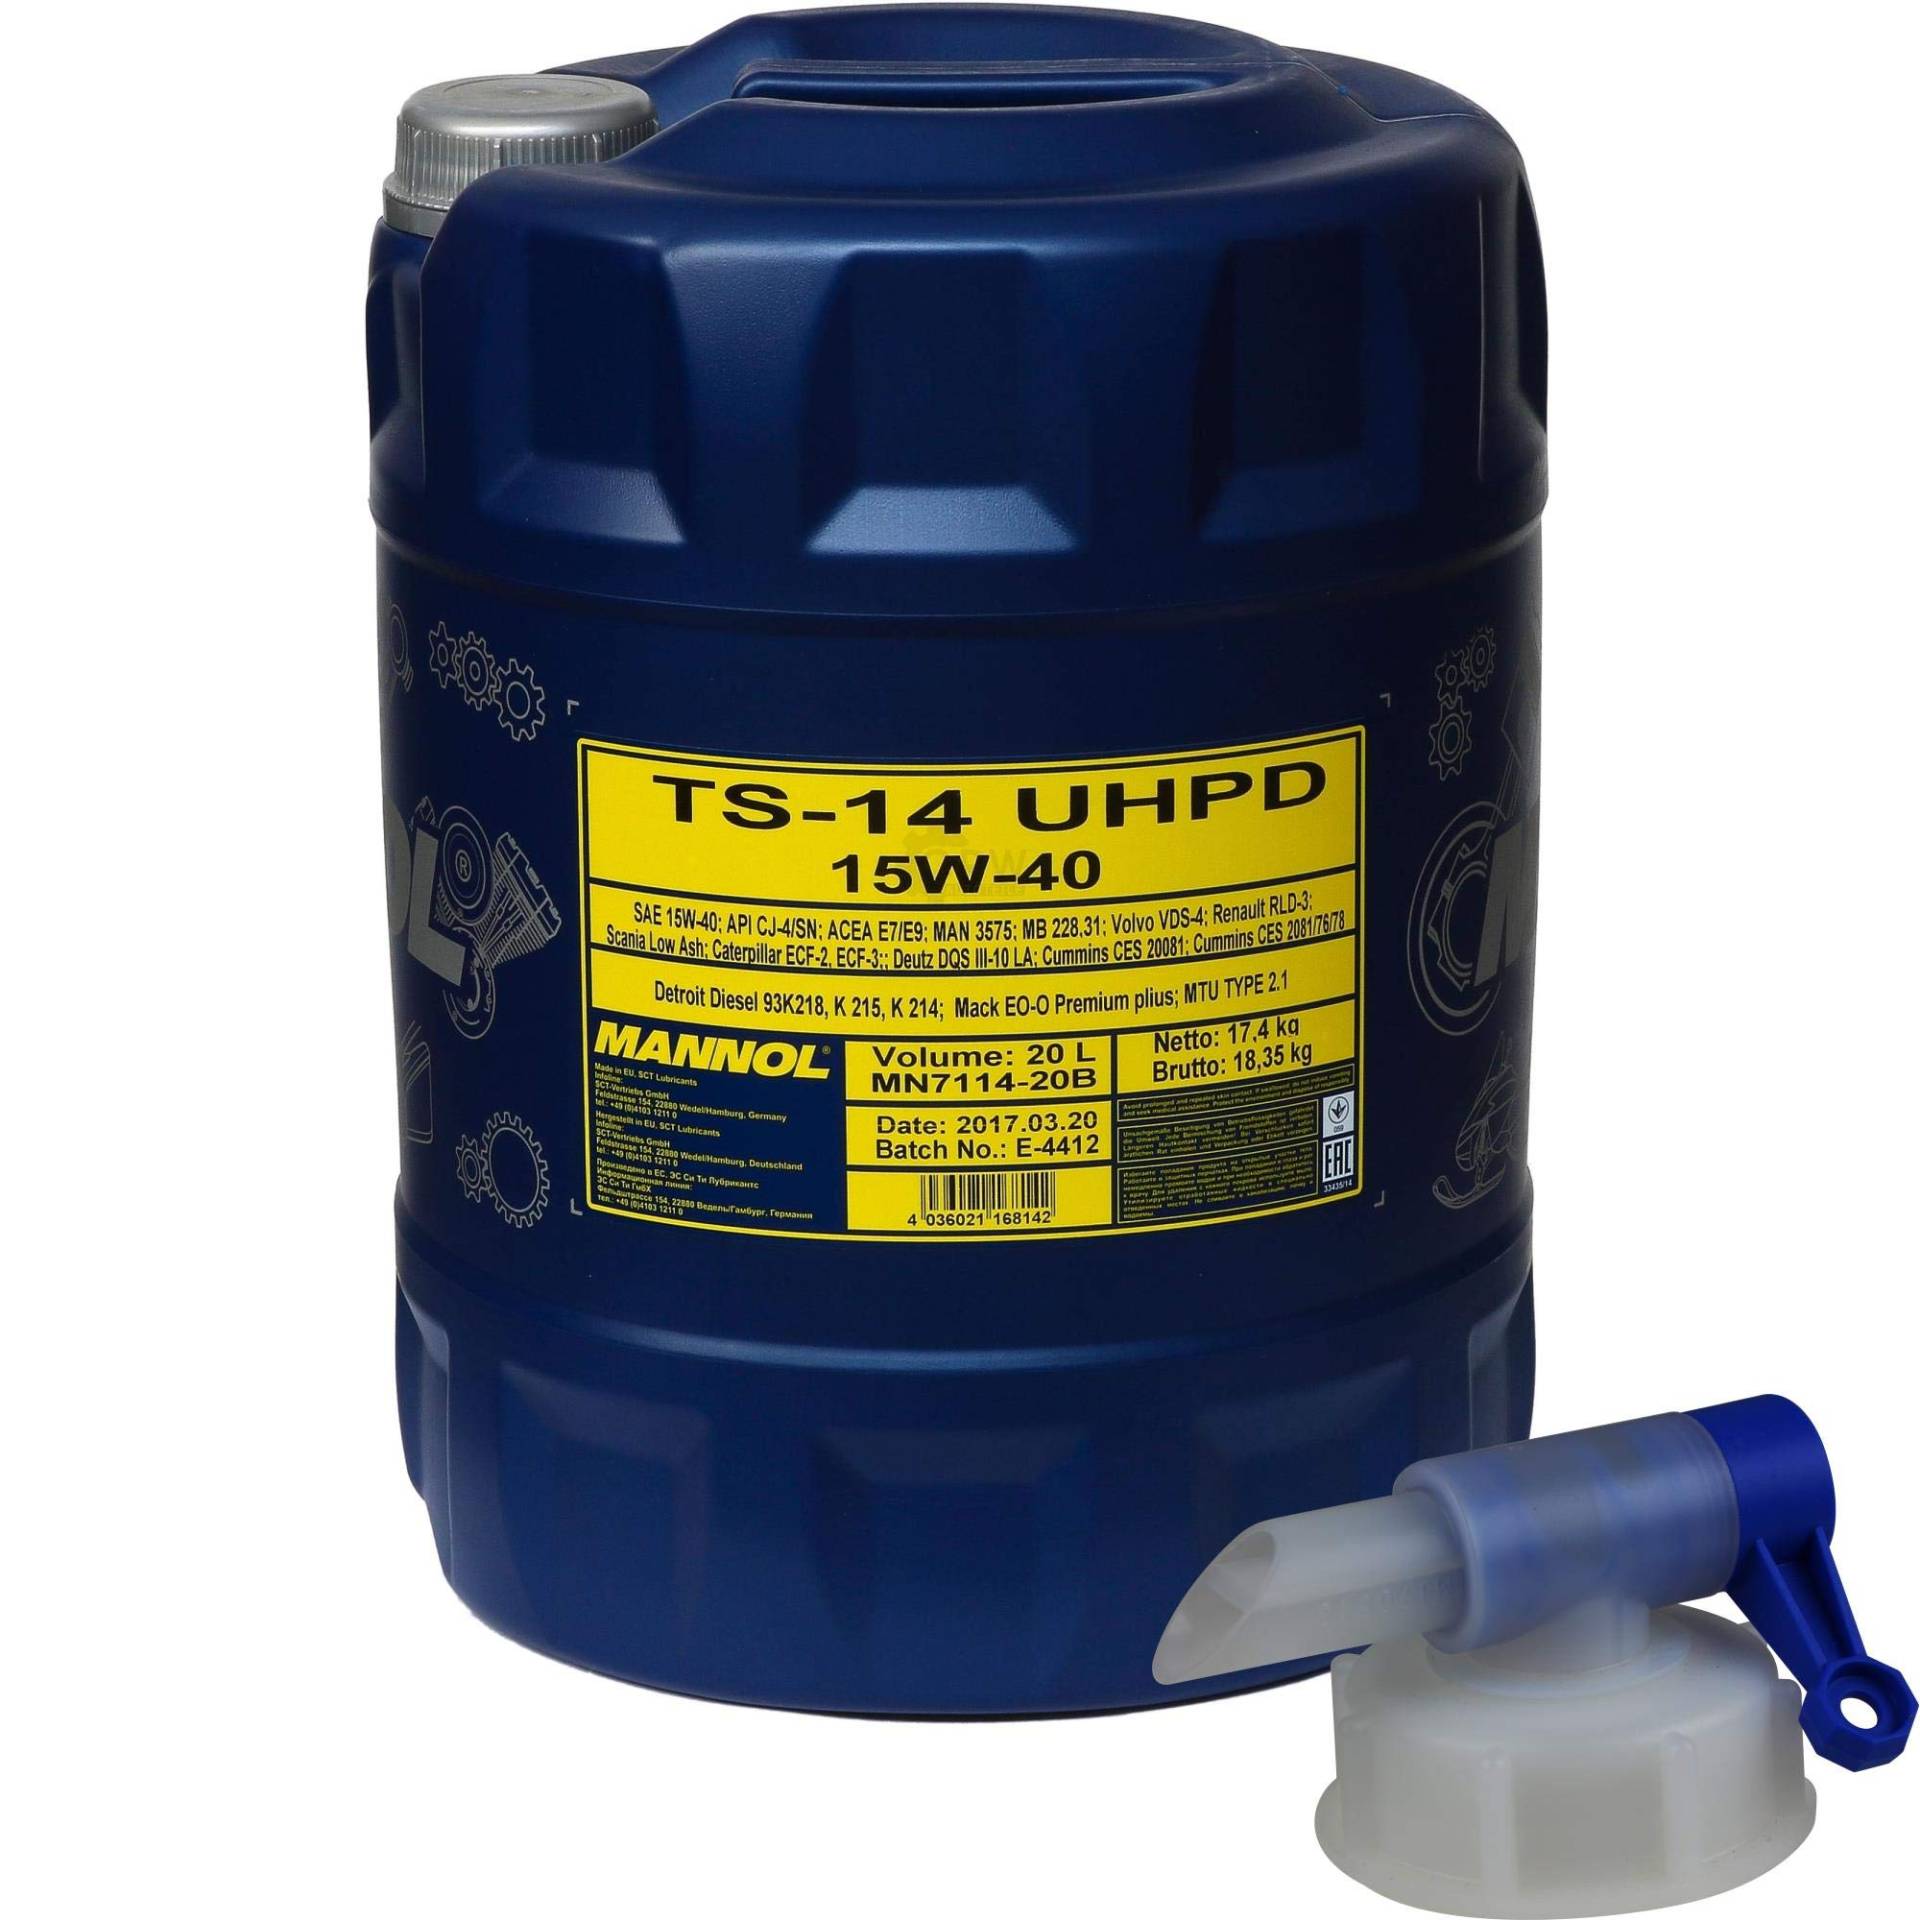 20 L MANNOL TS-14 UHPD 15W-40 API CJ-4/SN Motoröl Oil synthetisch + Auslaufhahn von Diederichs